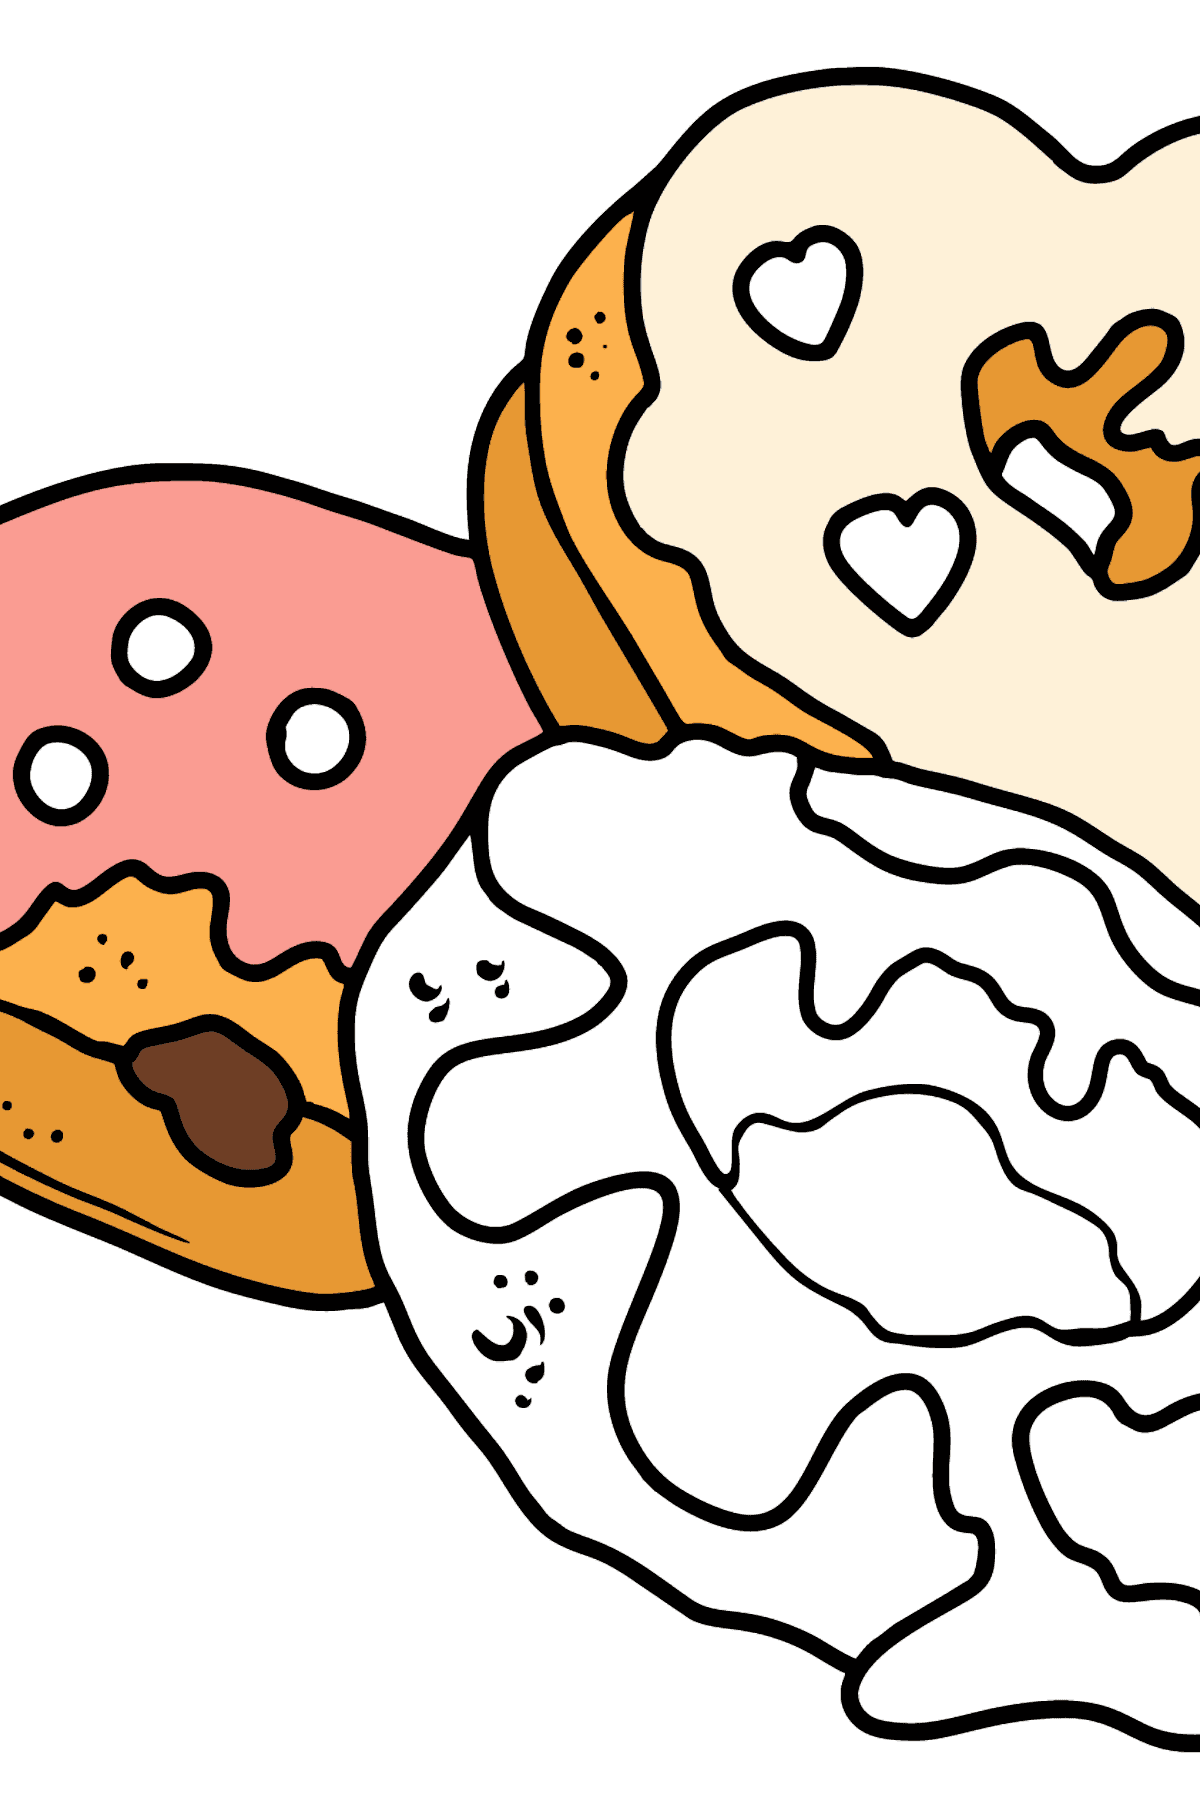 Раскраска пончики разной формы - Картинки для Детей